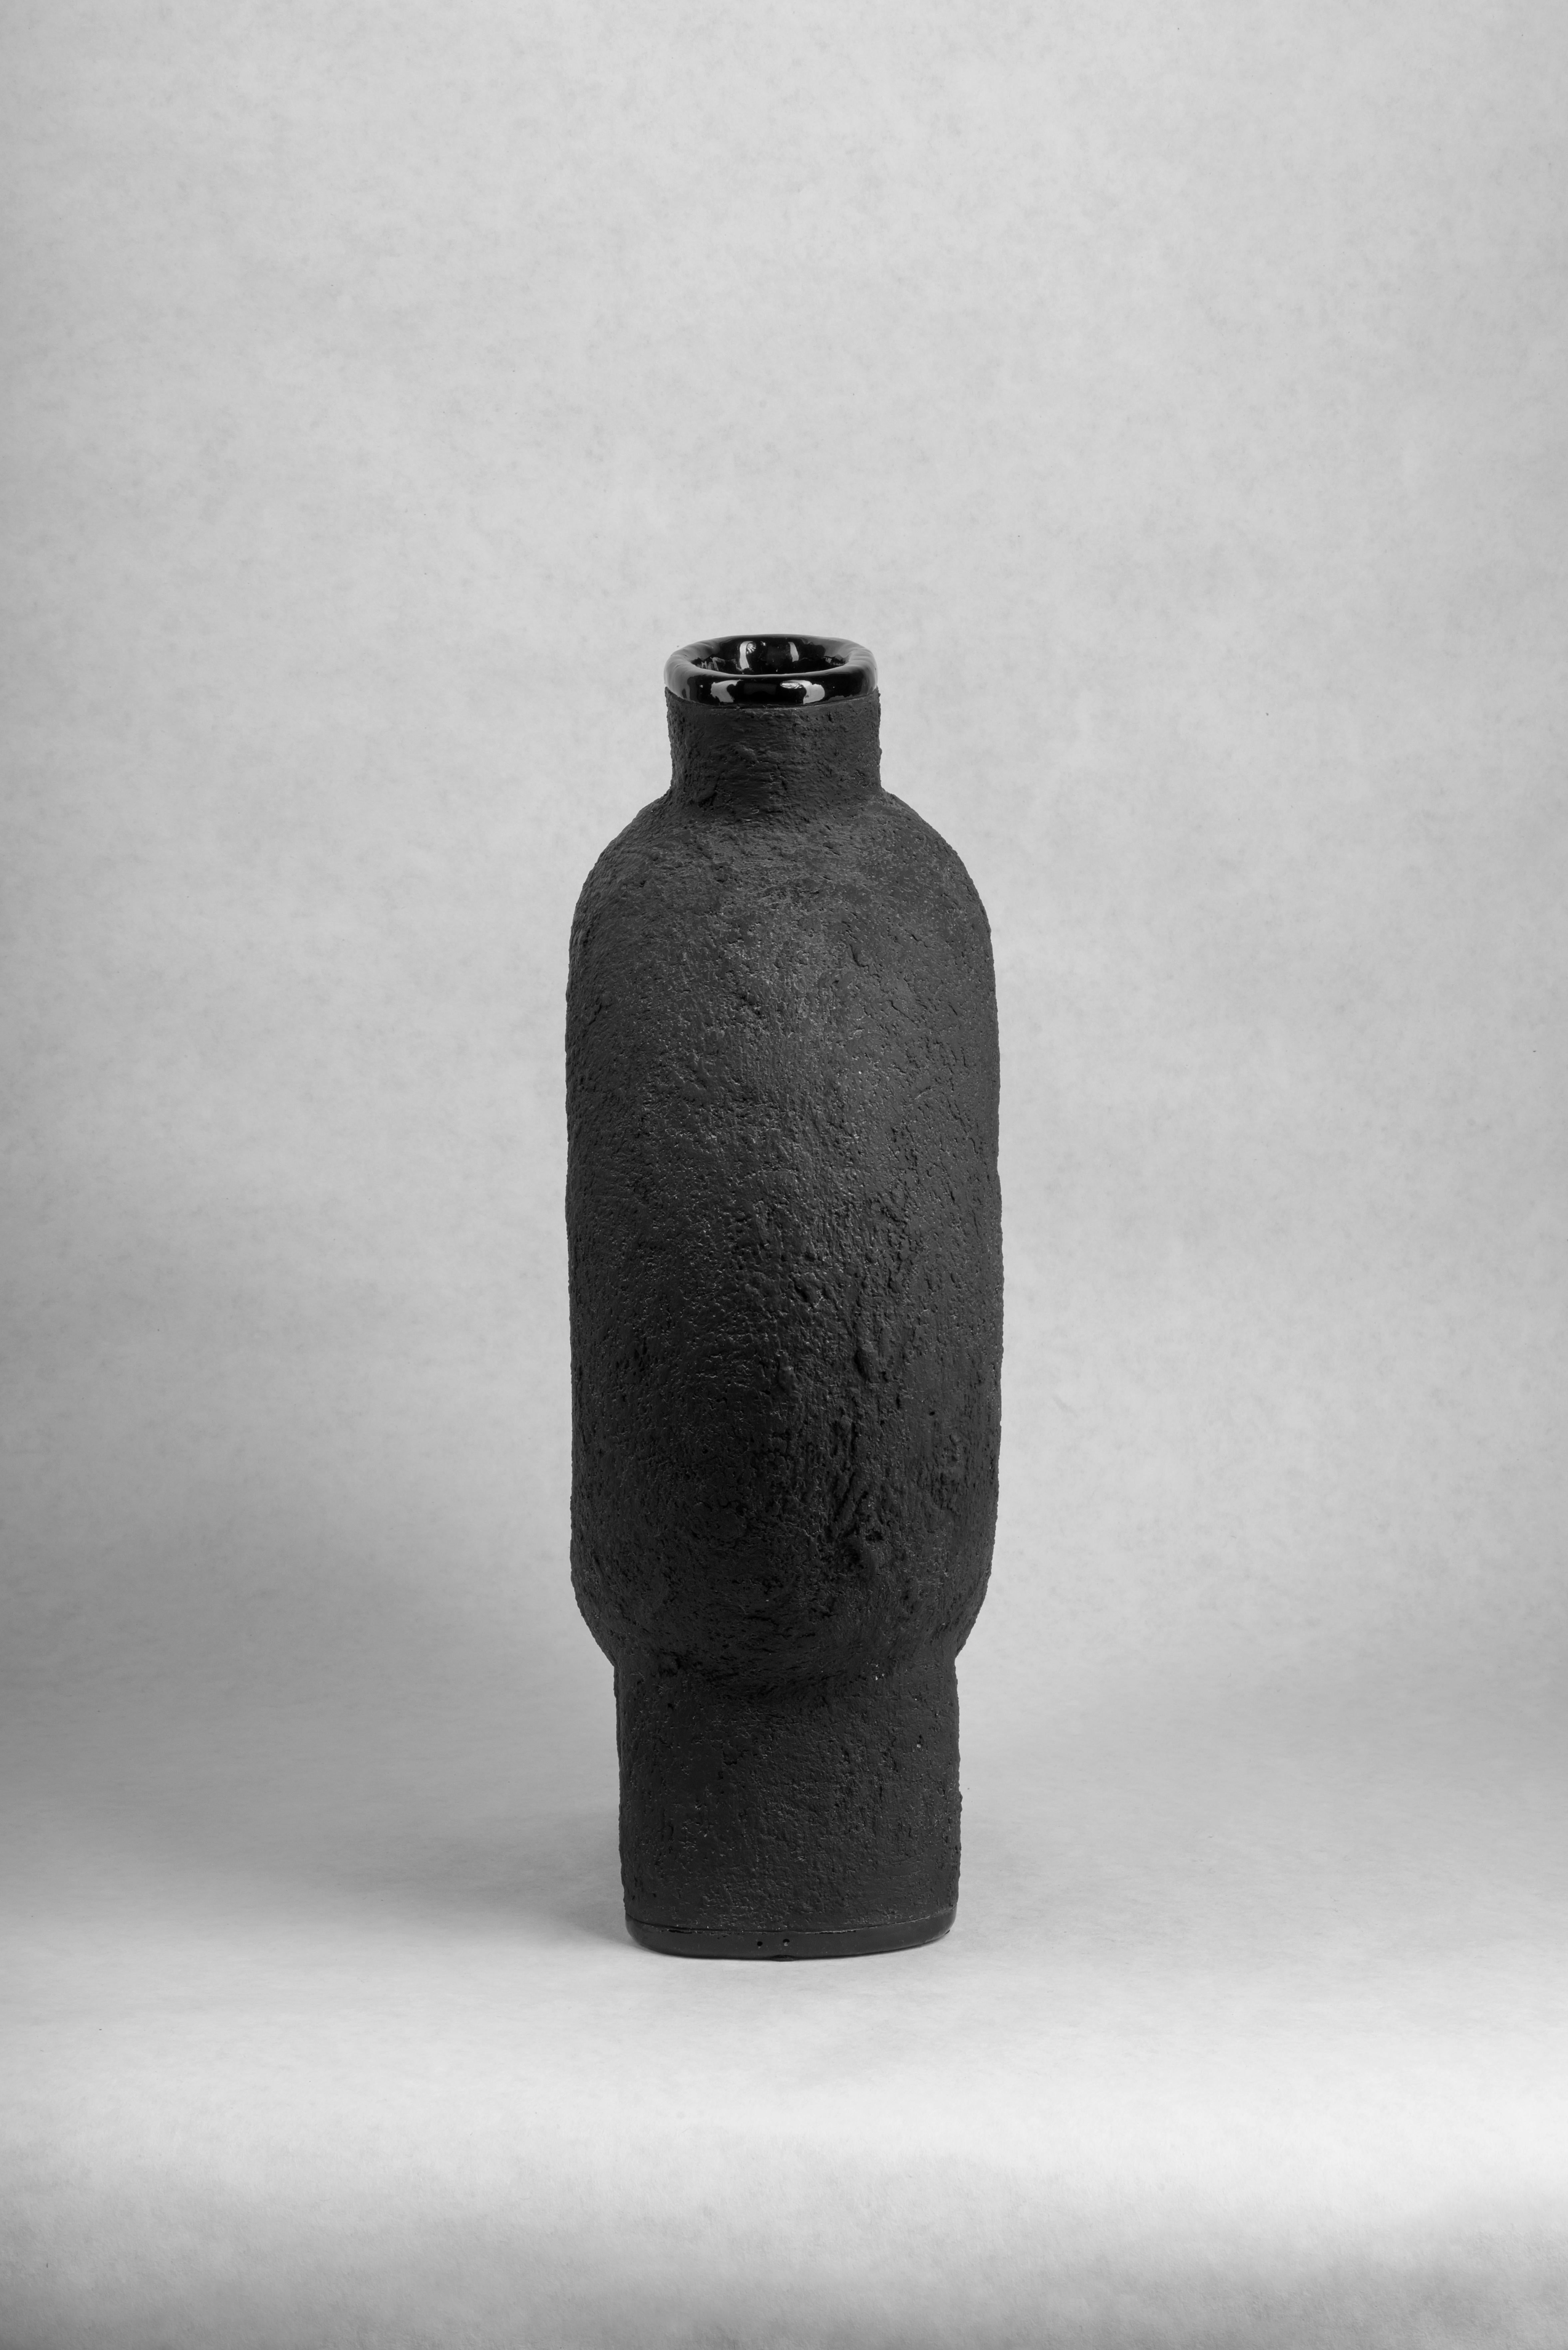 Paire de vases en céramique sculptée par FAINA
Design : Victoriya Yakusha
MATERIAL : Matériau : argile / céramique
Dimensions : 43 x 20 x H 50 cm


Le vase fait partie d'une série de 5 vases, l'ensemble des vases est composé de :

1. Vase sur trois